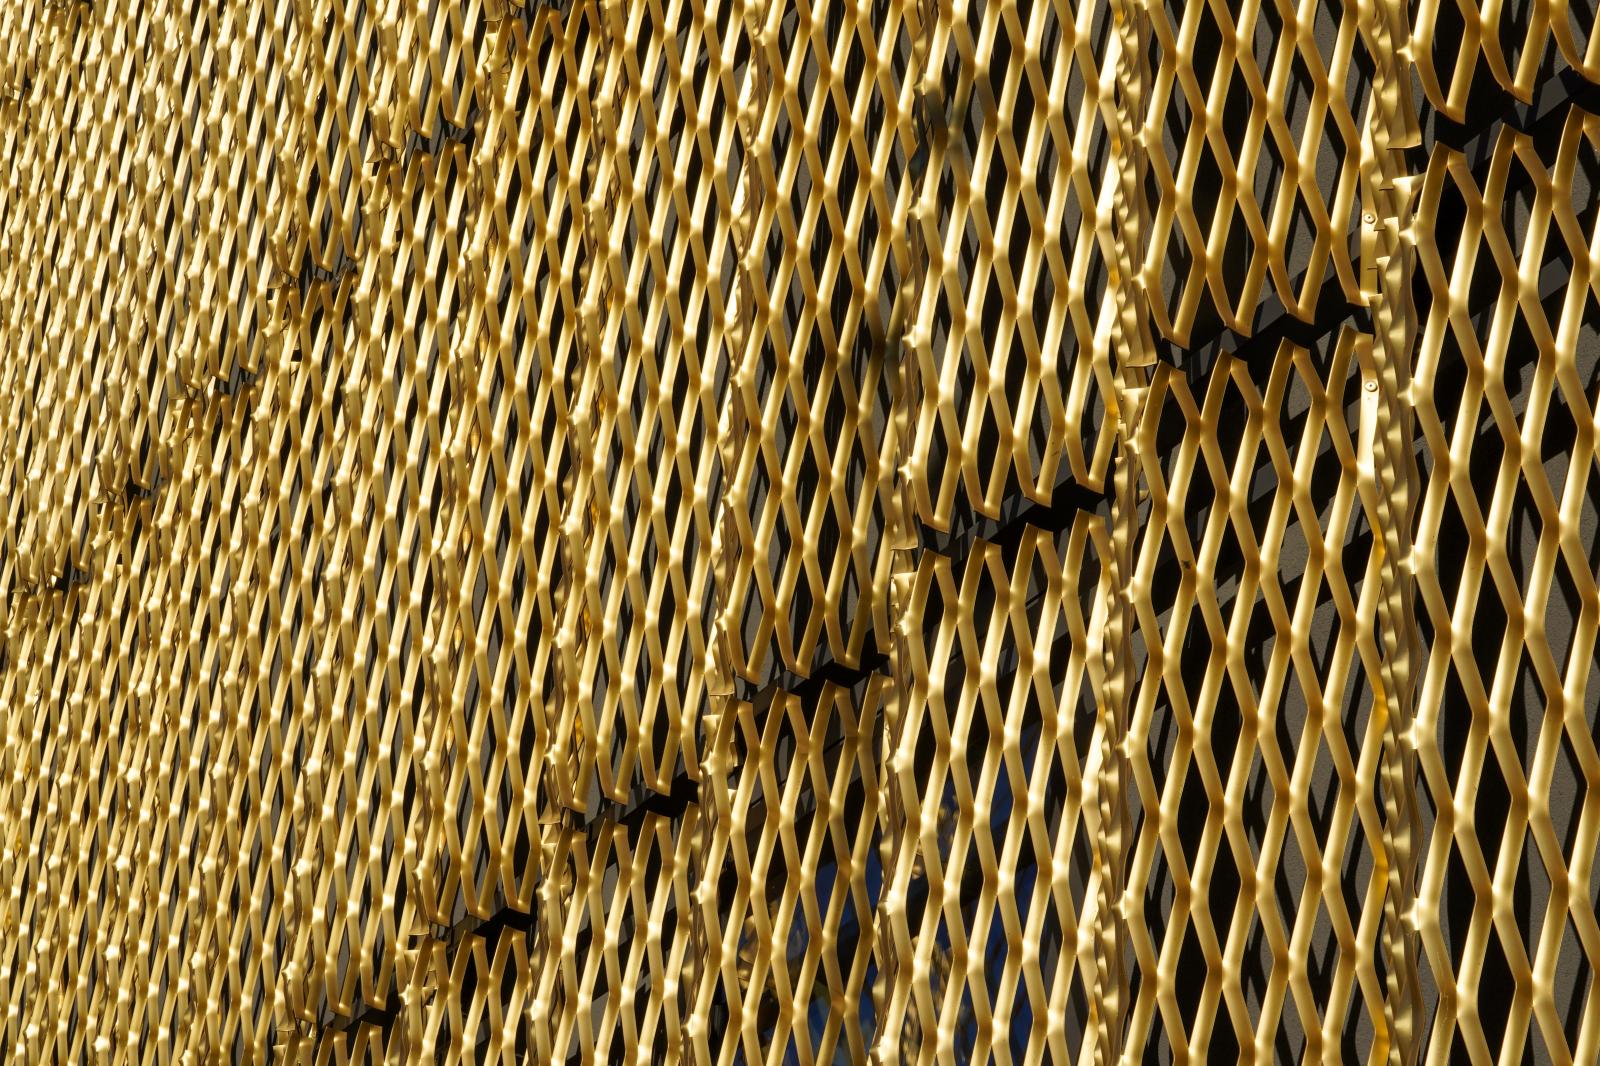 Geometric Glimmer: Golden Weave of Modernity